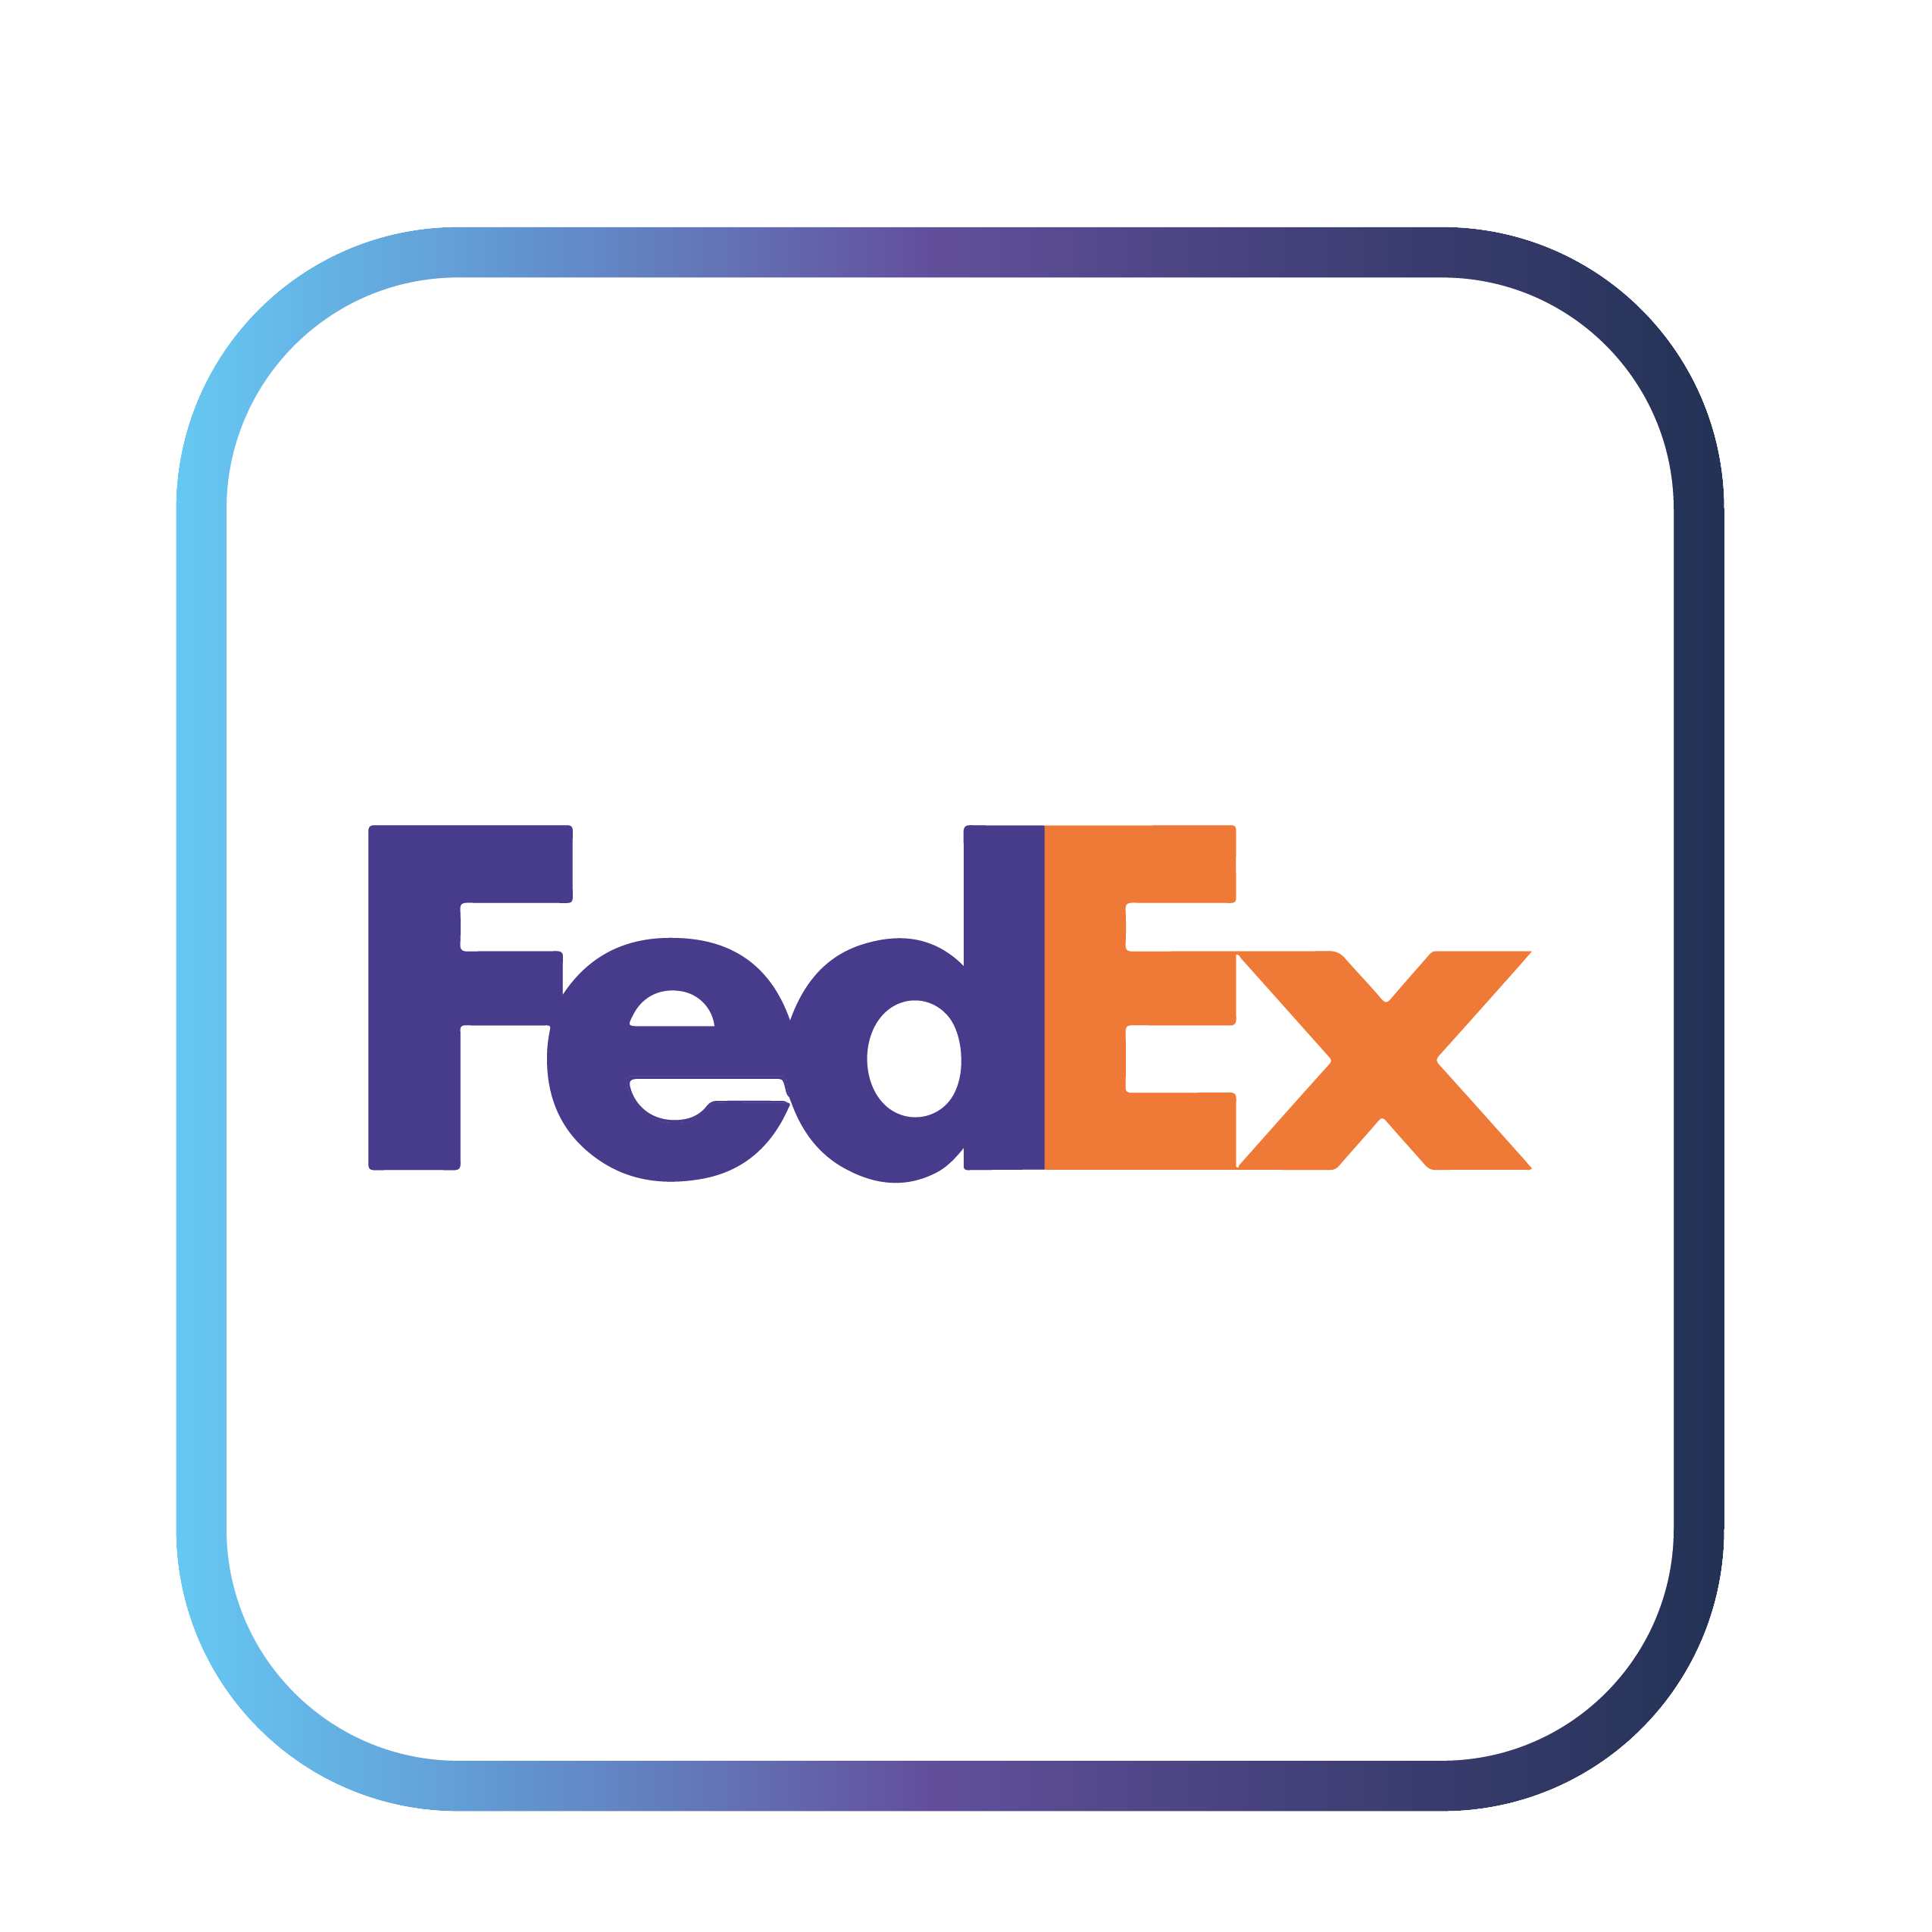 FEDEX - Agente autorizado de envios